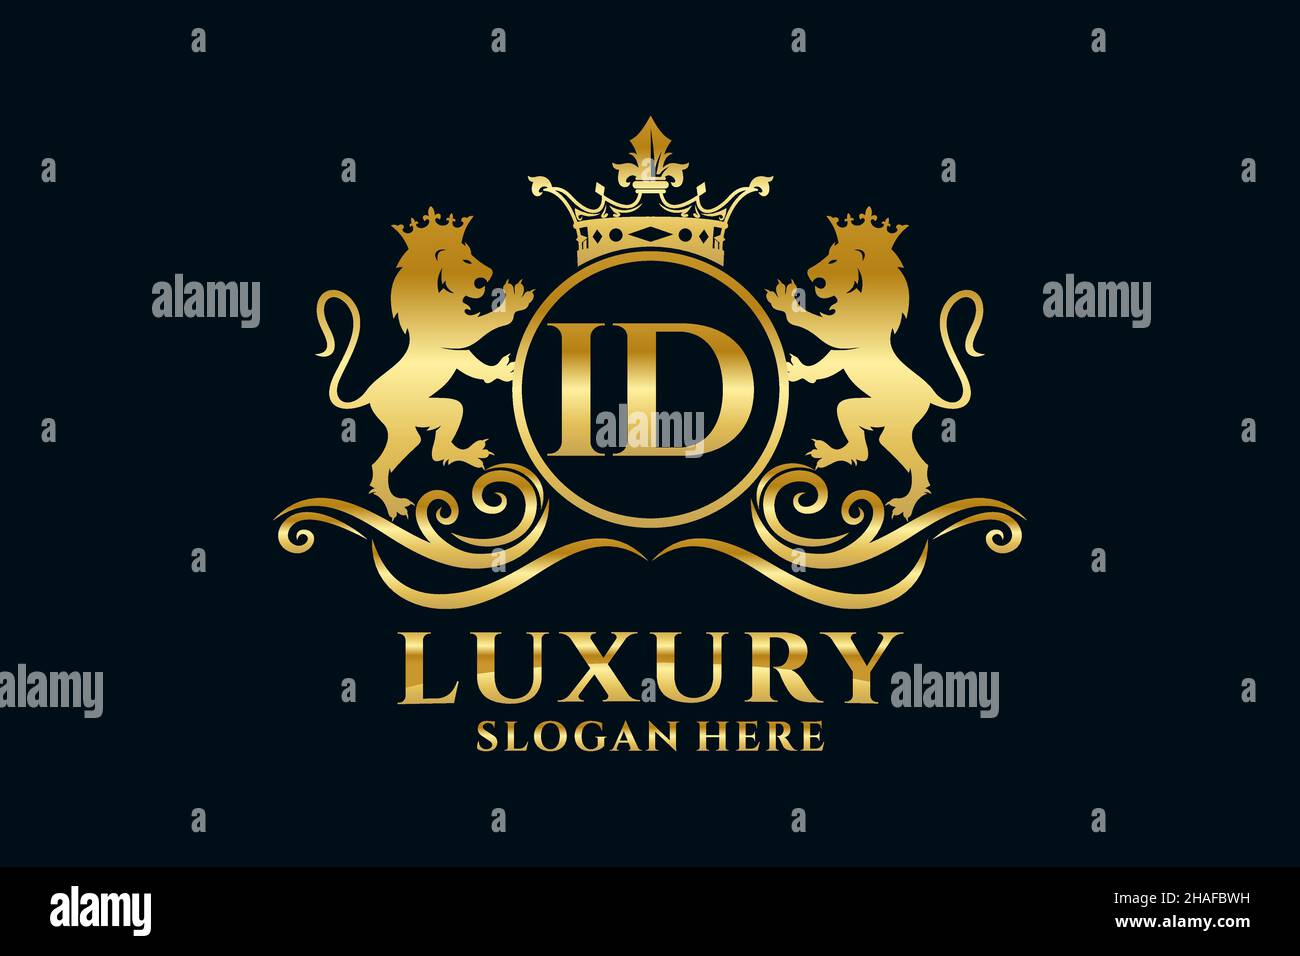 ID Carta León Royal Luxury Logotipo plantilla en arte vectorial para proyectos de promoción de marca de lujo y otra ilustración vectorial. Ilustración del Vector